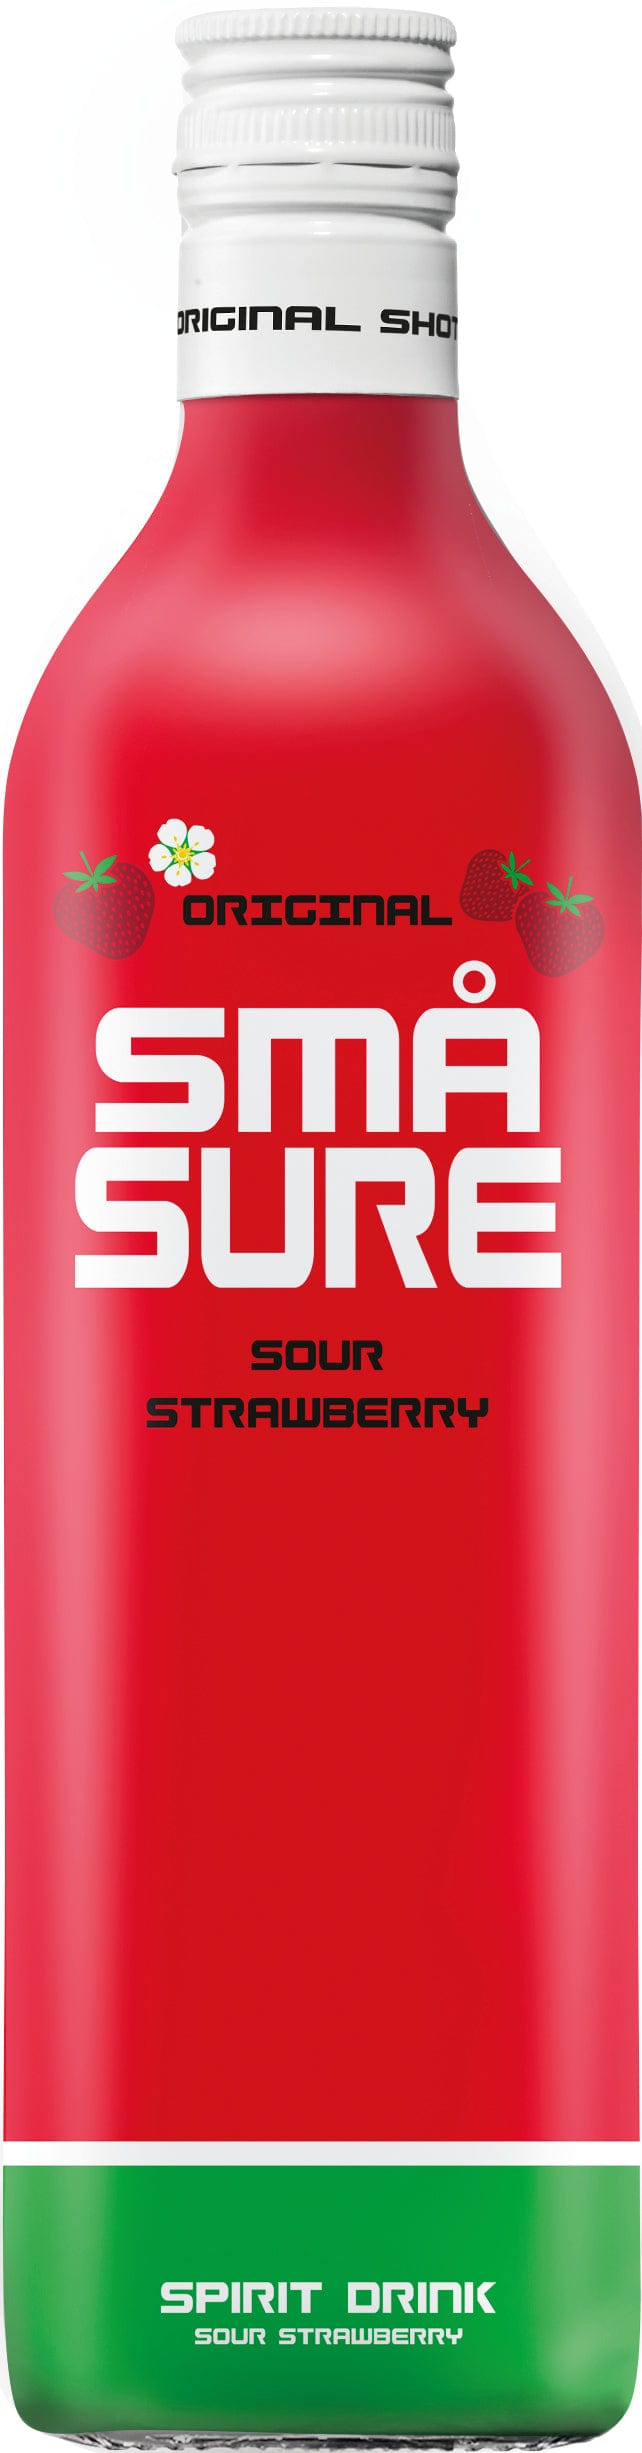 SMÅ SURE Sour Strawberry 70cl